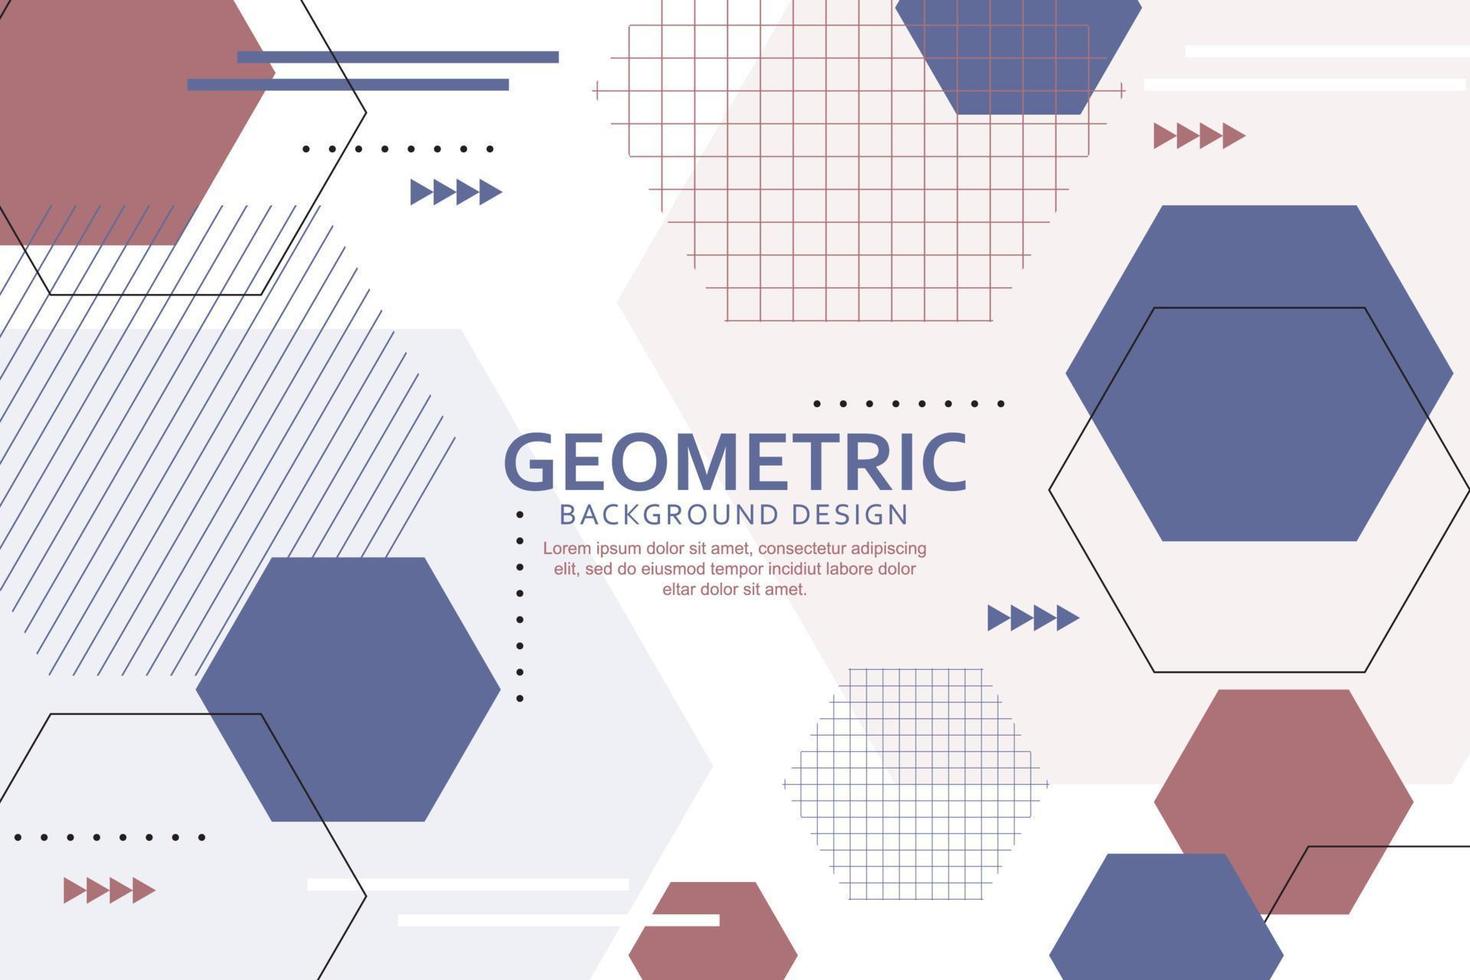 géométrique Contexte avec abstrait polygonal formes vecteur